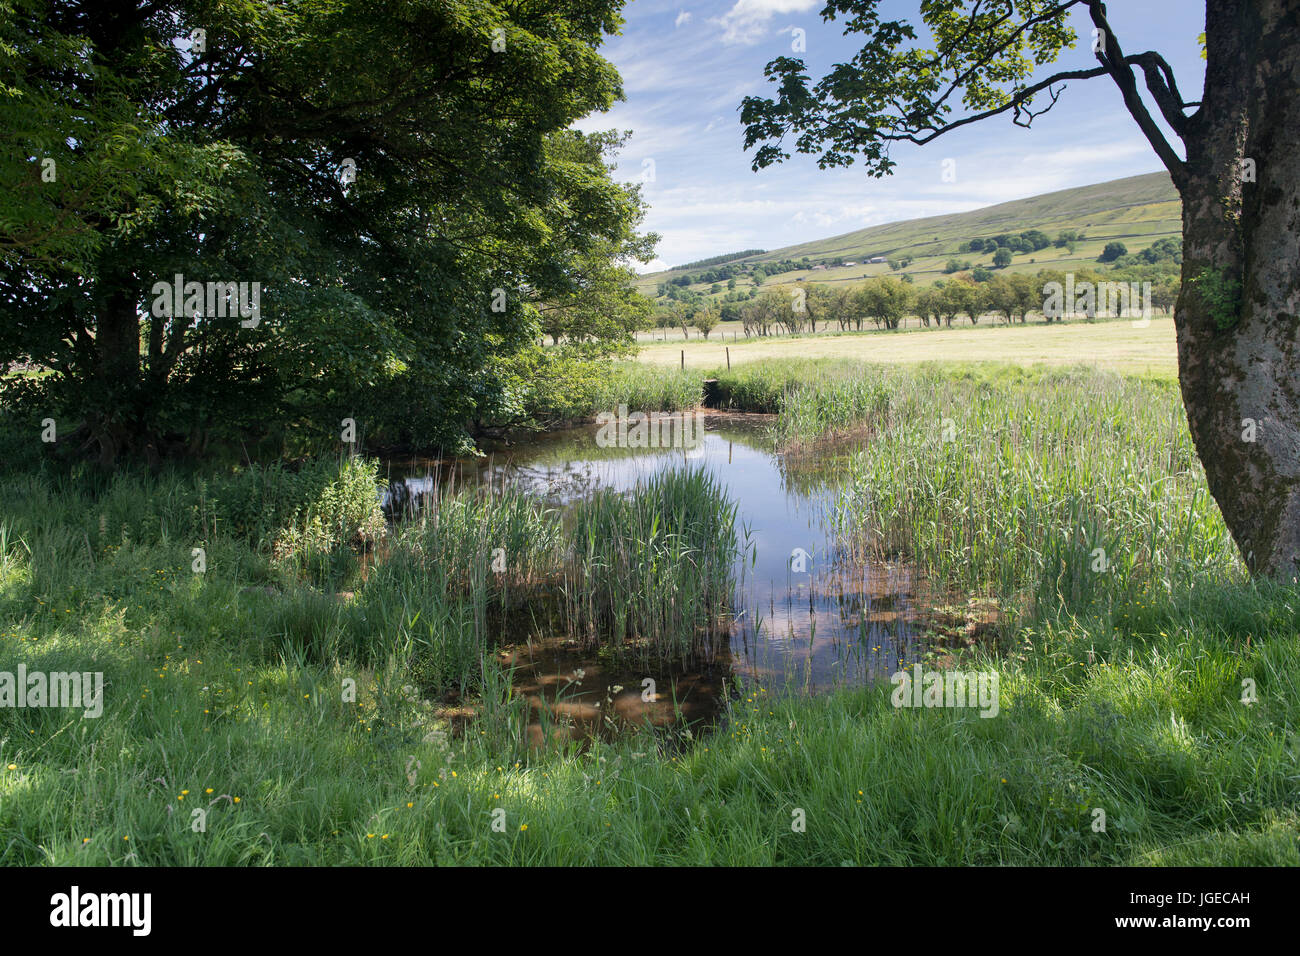 Estanque de drenaje creado en la granja meadow como hábitat de la vida silvestre, North Yorkshire, Reino Unido. Foto de stock